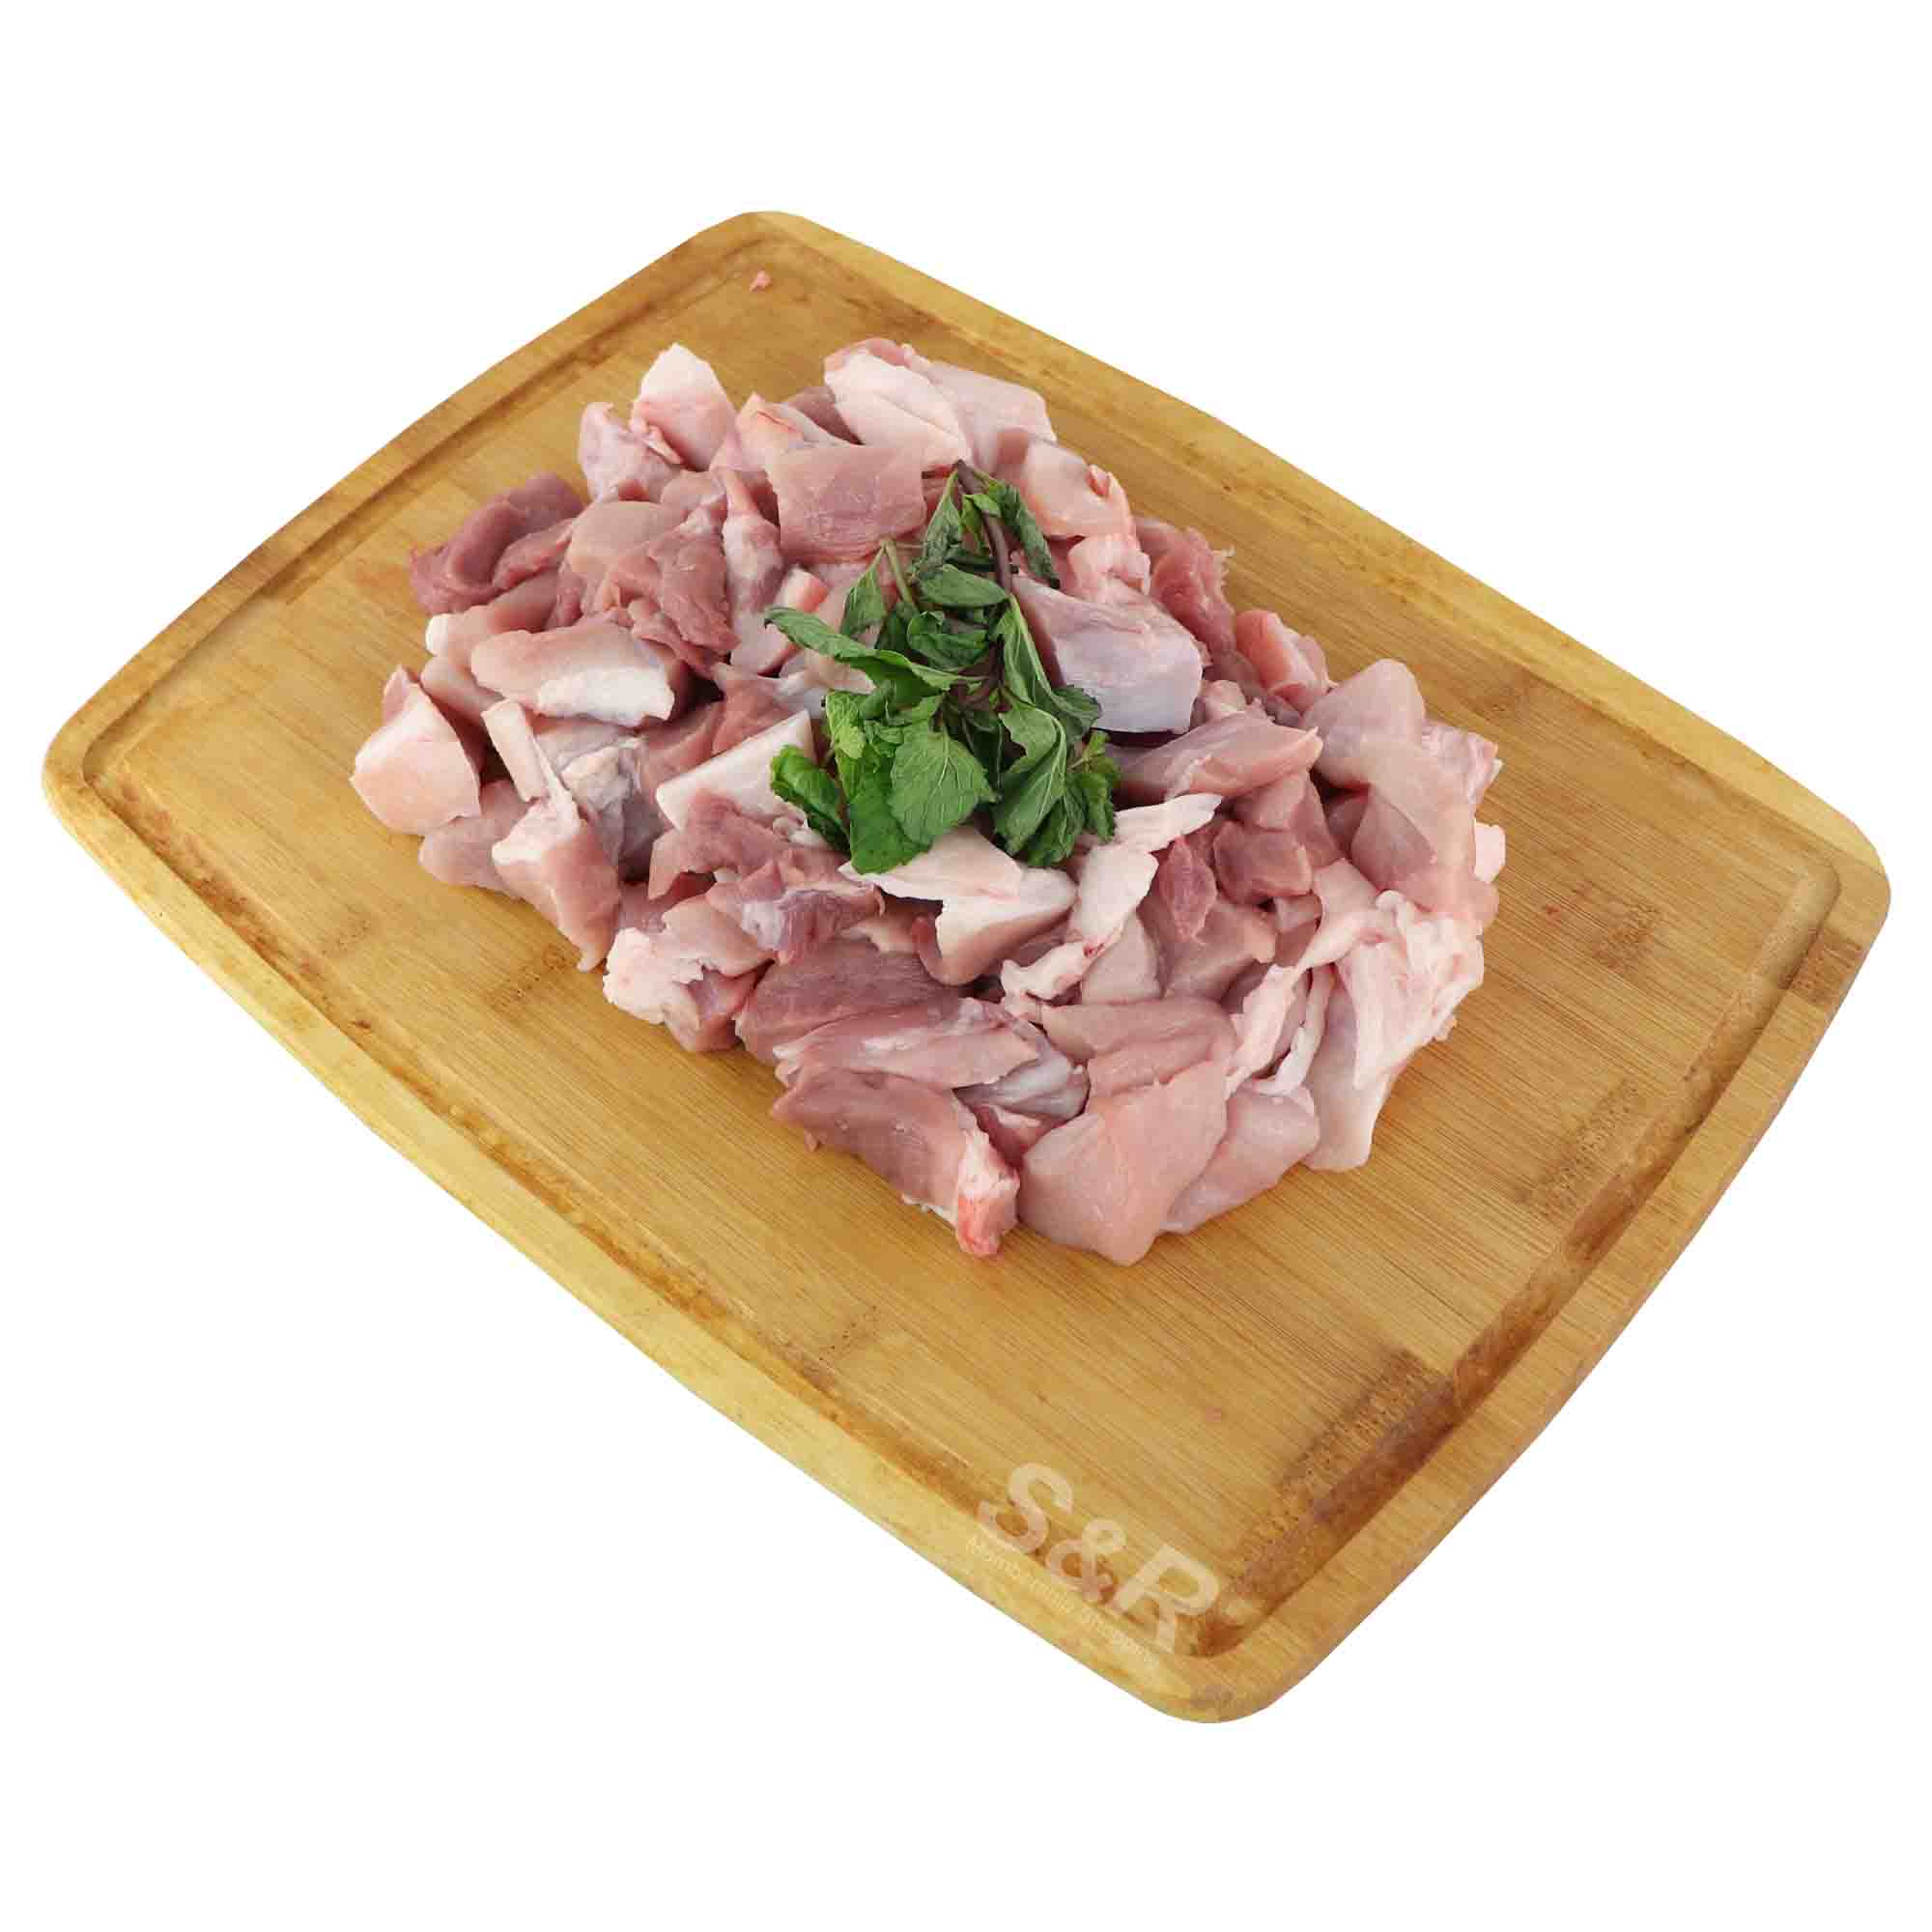 S&R Pork Menudo Cut approx. 1.7kg